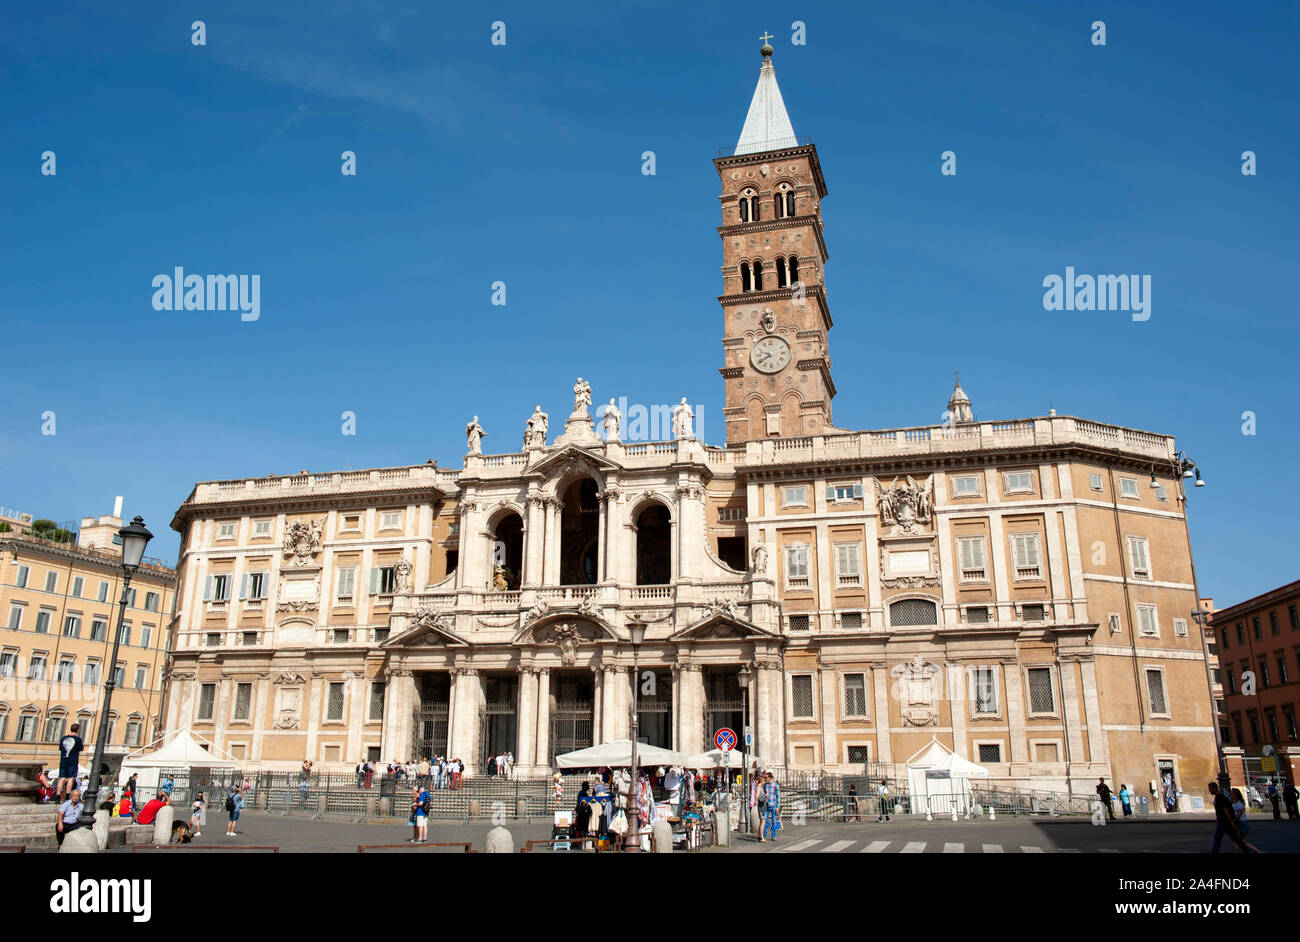 italy, rome, basilica di santa maria maggiore Stock Photo